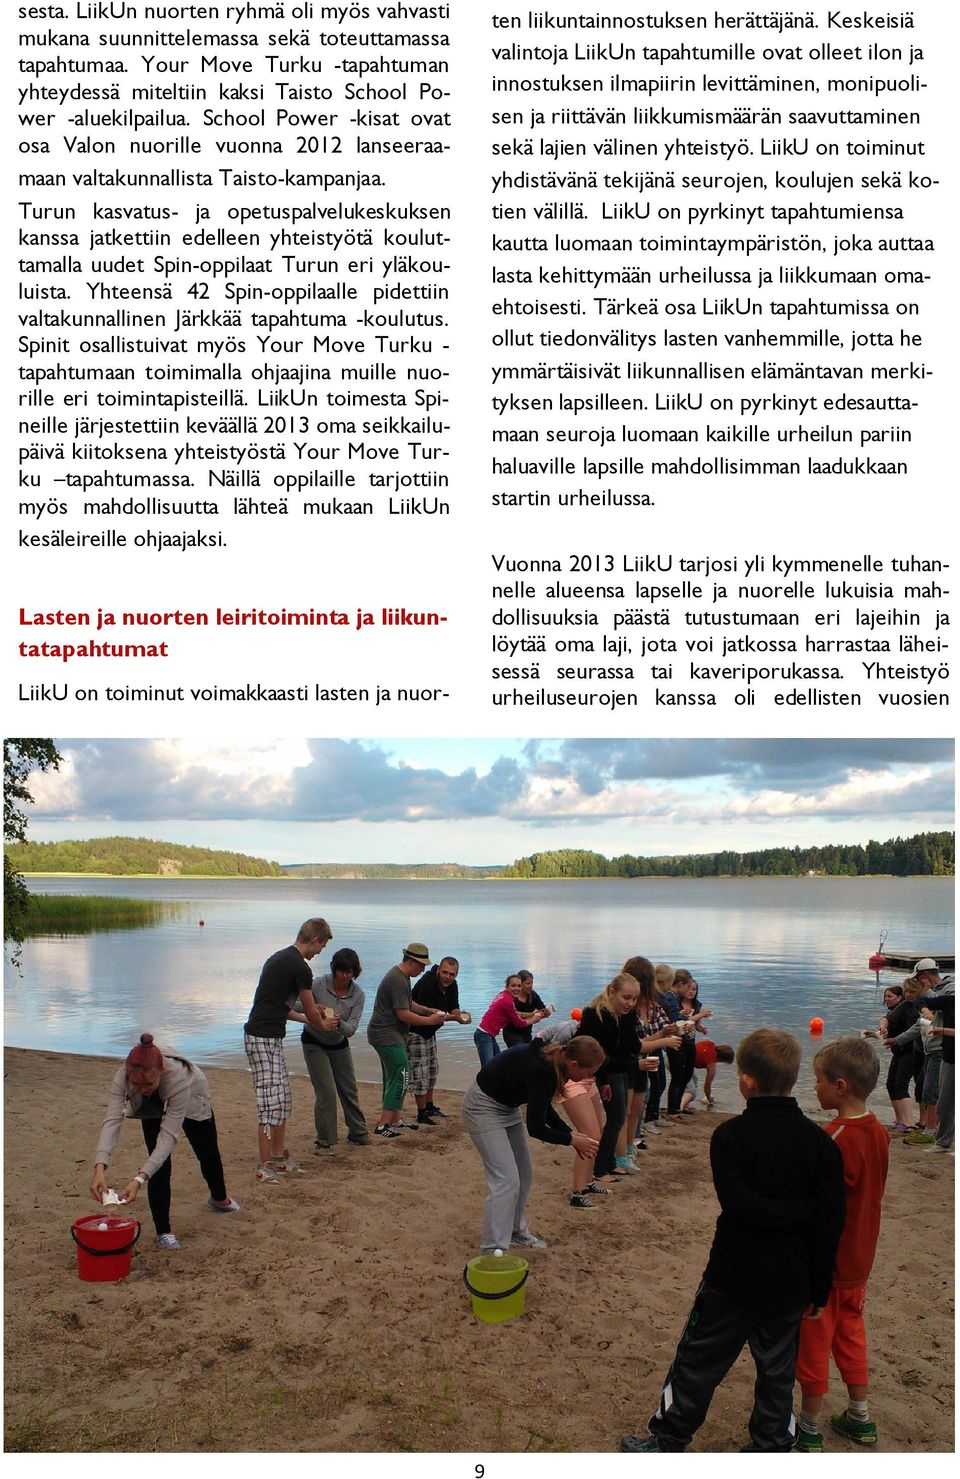 Turun kasvatus- ja opetuspalvelukeskuksen kanssa jatkettiin edelleen yhteistyötä kouluttamalla uudet Spin-oppilaat Turun eri yläkouluista.